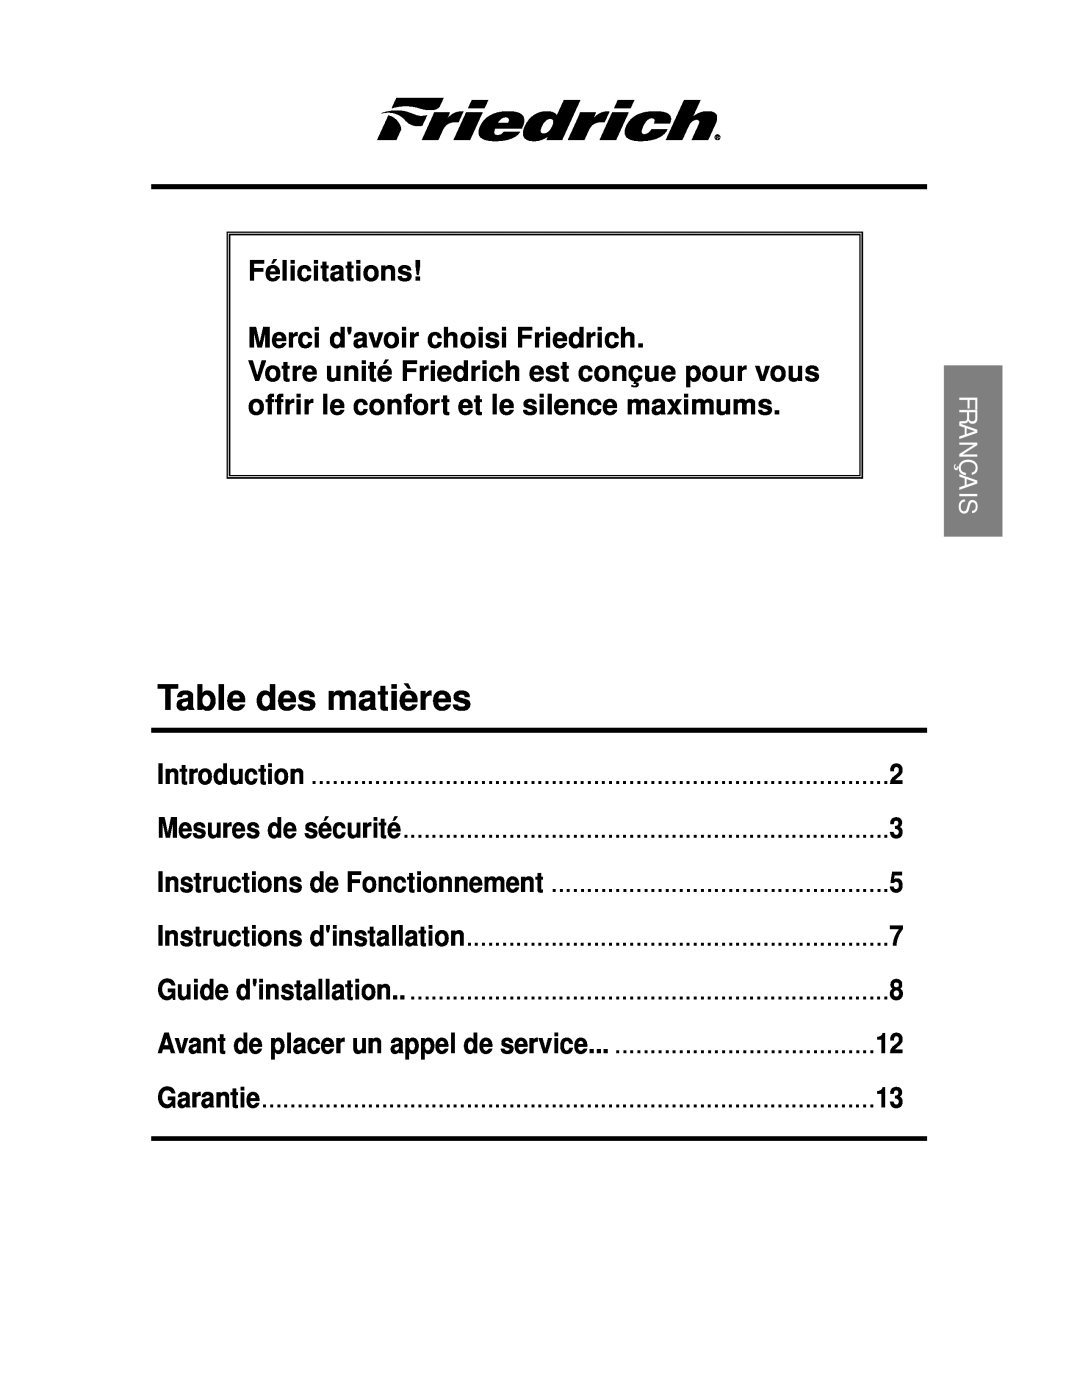 Friedrich CP06 Table des matières, Félicitations Merci davoir choisi Friedrich, Mesures de sécurité, Guide dinstallation 